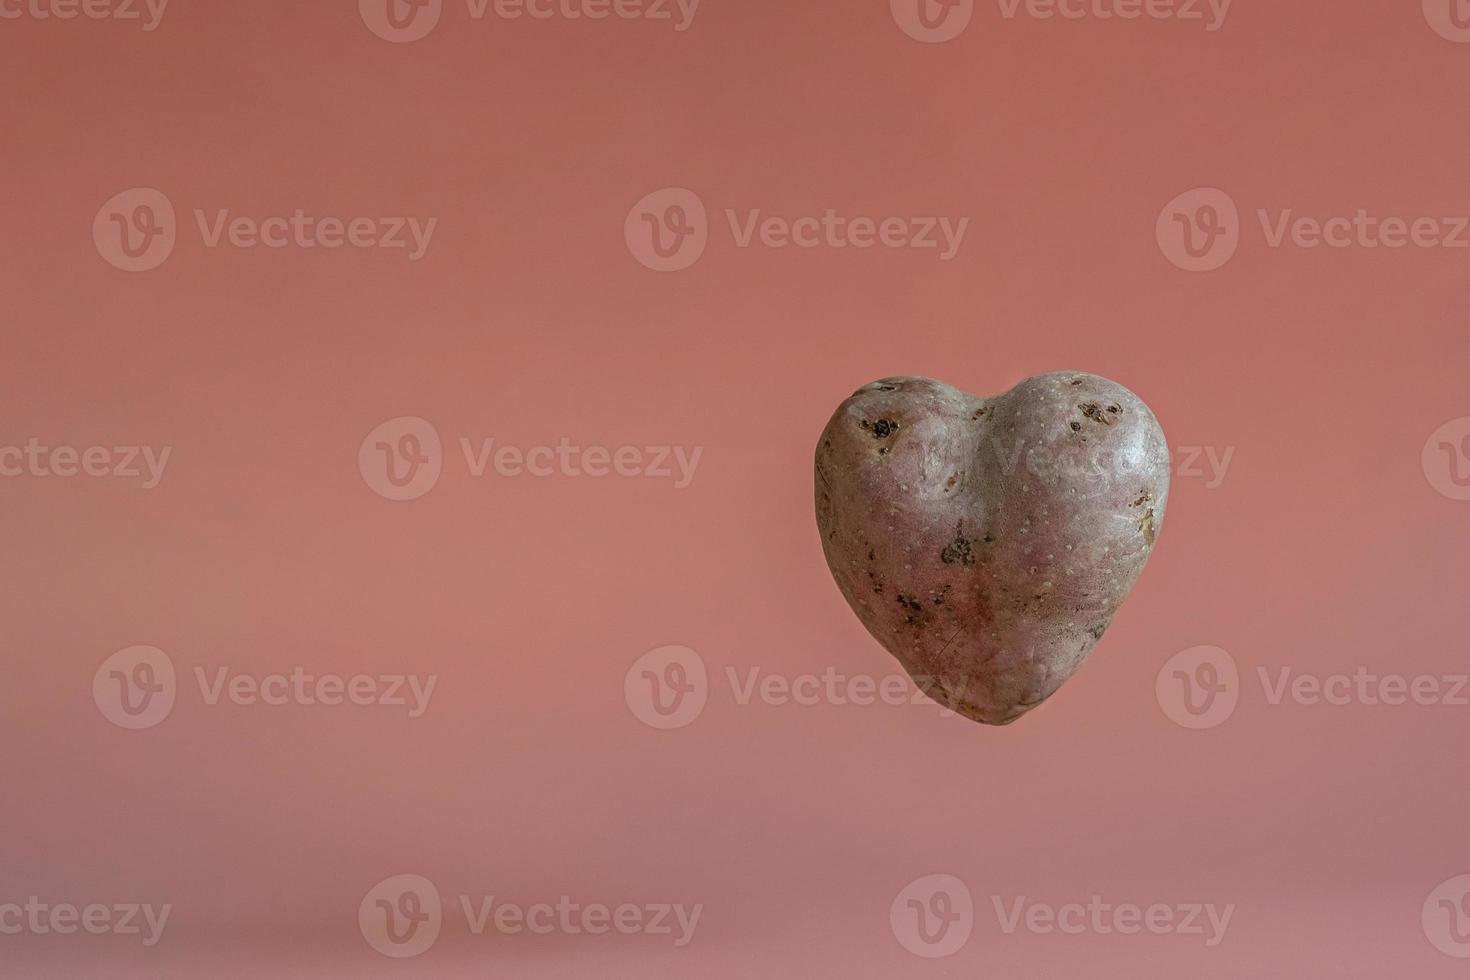 hjärtformade potatisar på en rosa bakgrund med levitationseffekt. begreppet jordbruk, skörd, vegetarism. foto